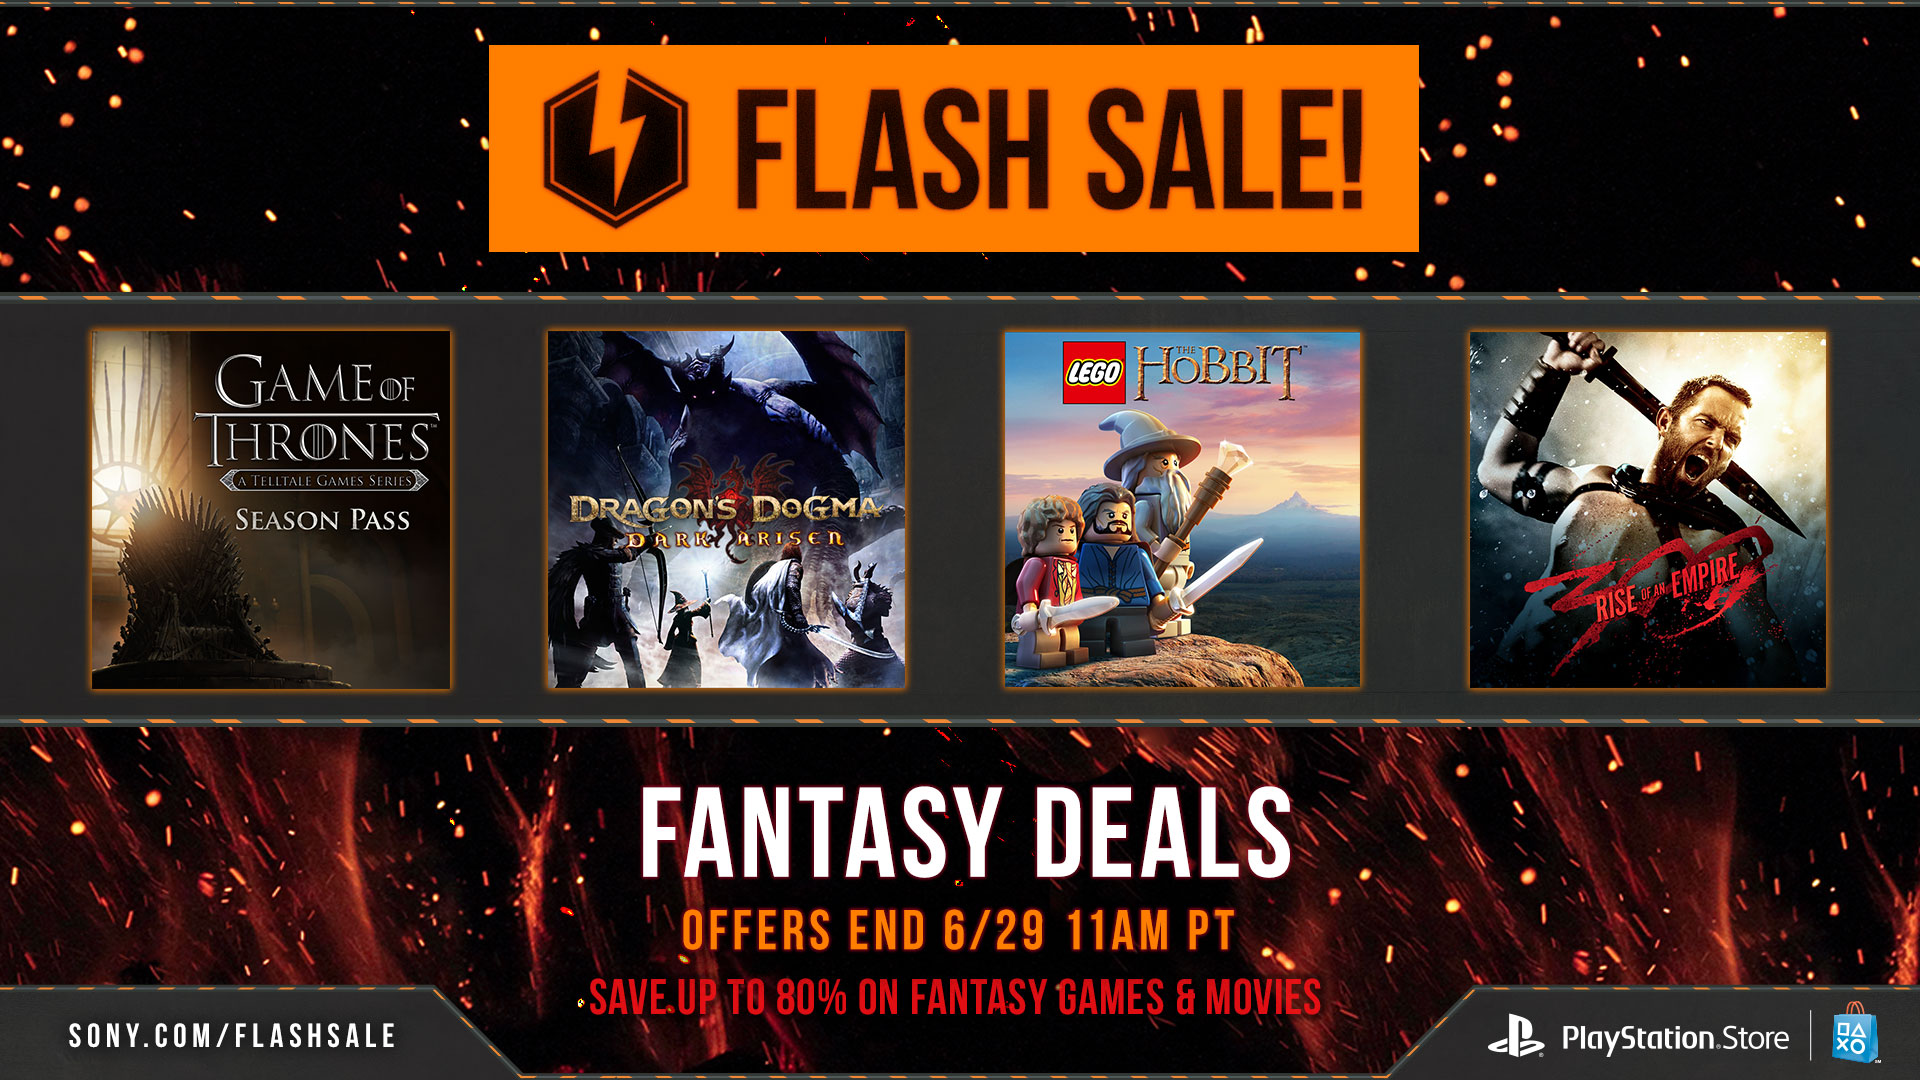 Jogos para PS4 e PS3 ficam até 80% mais baratos em promoção Flash